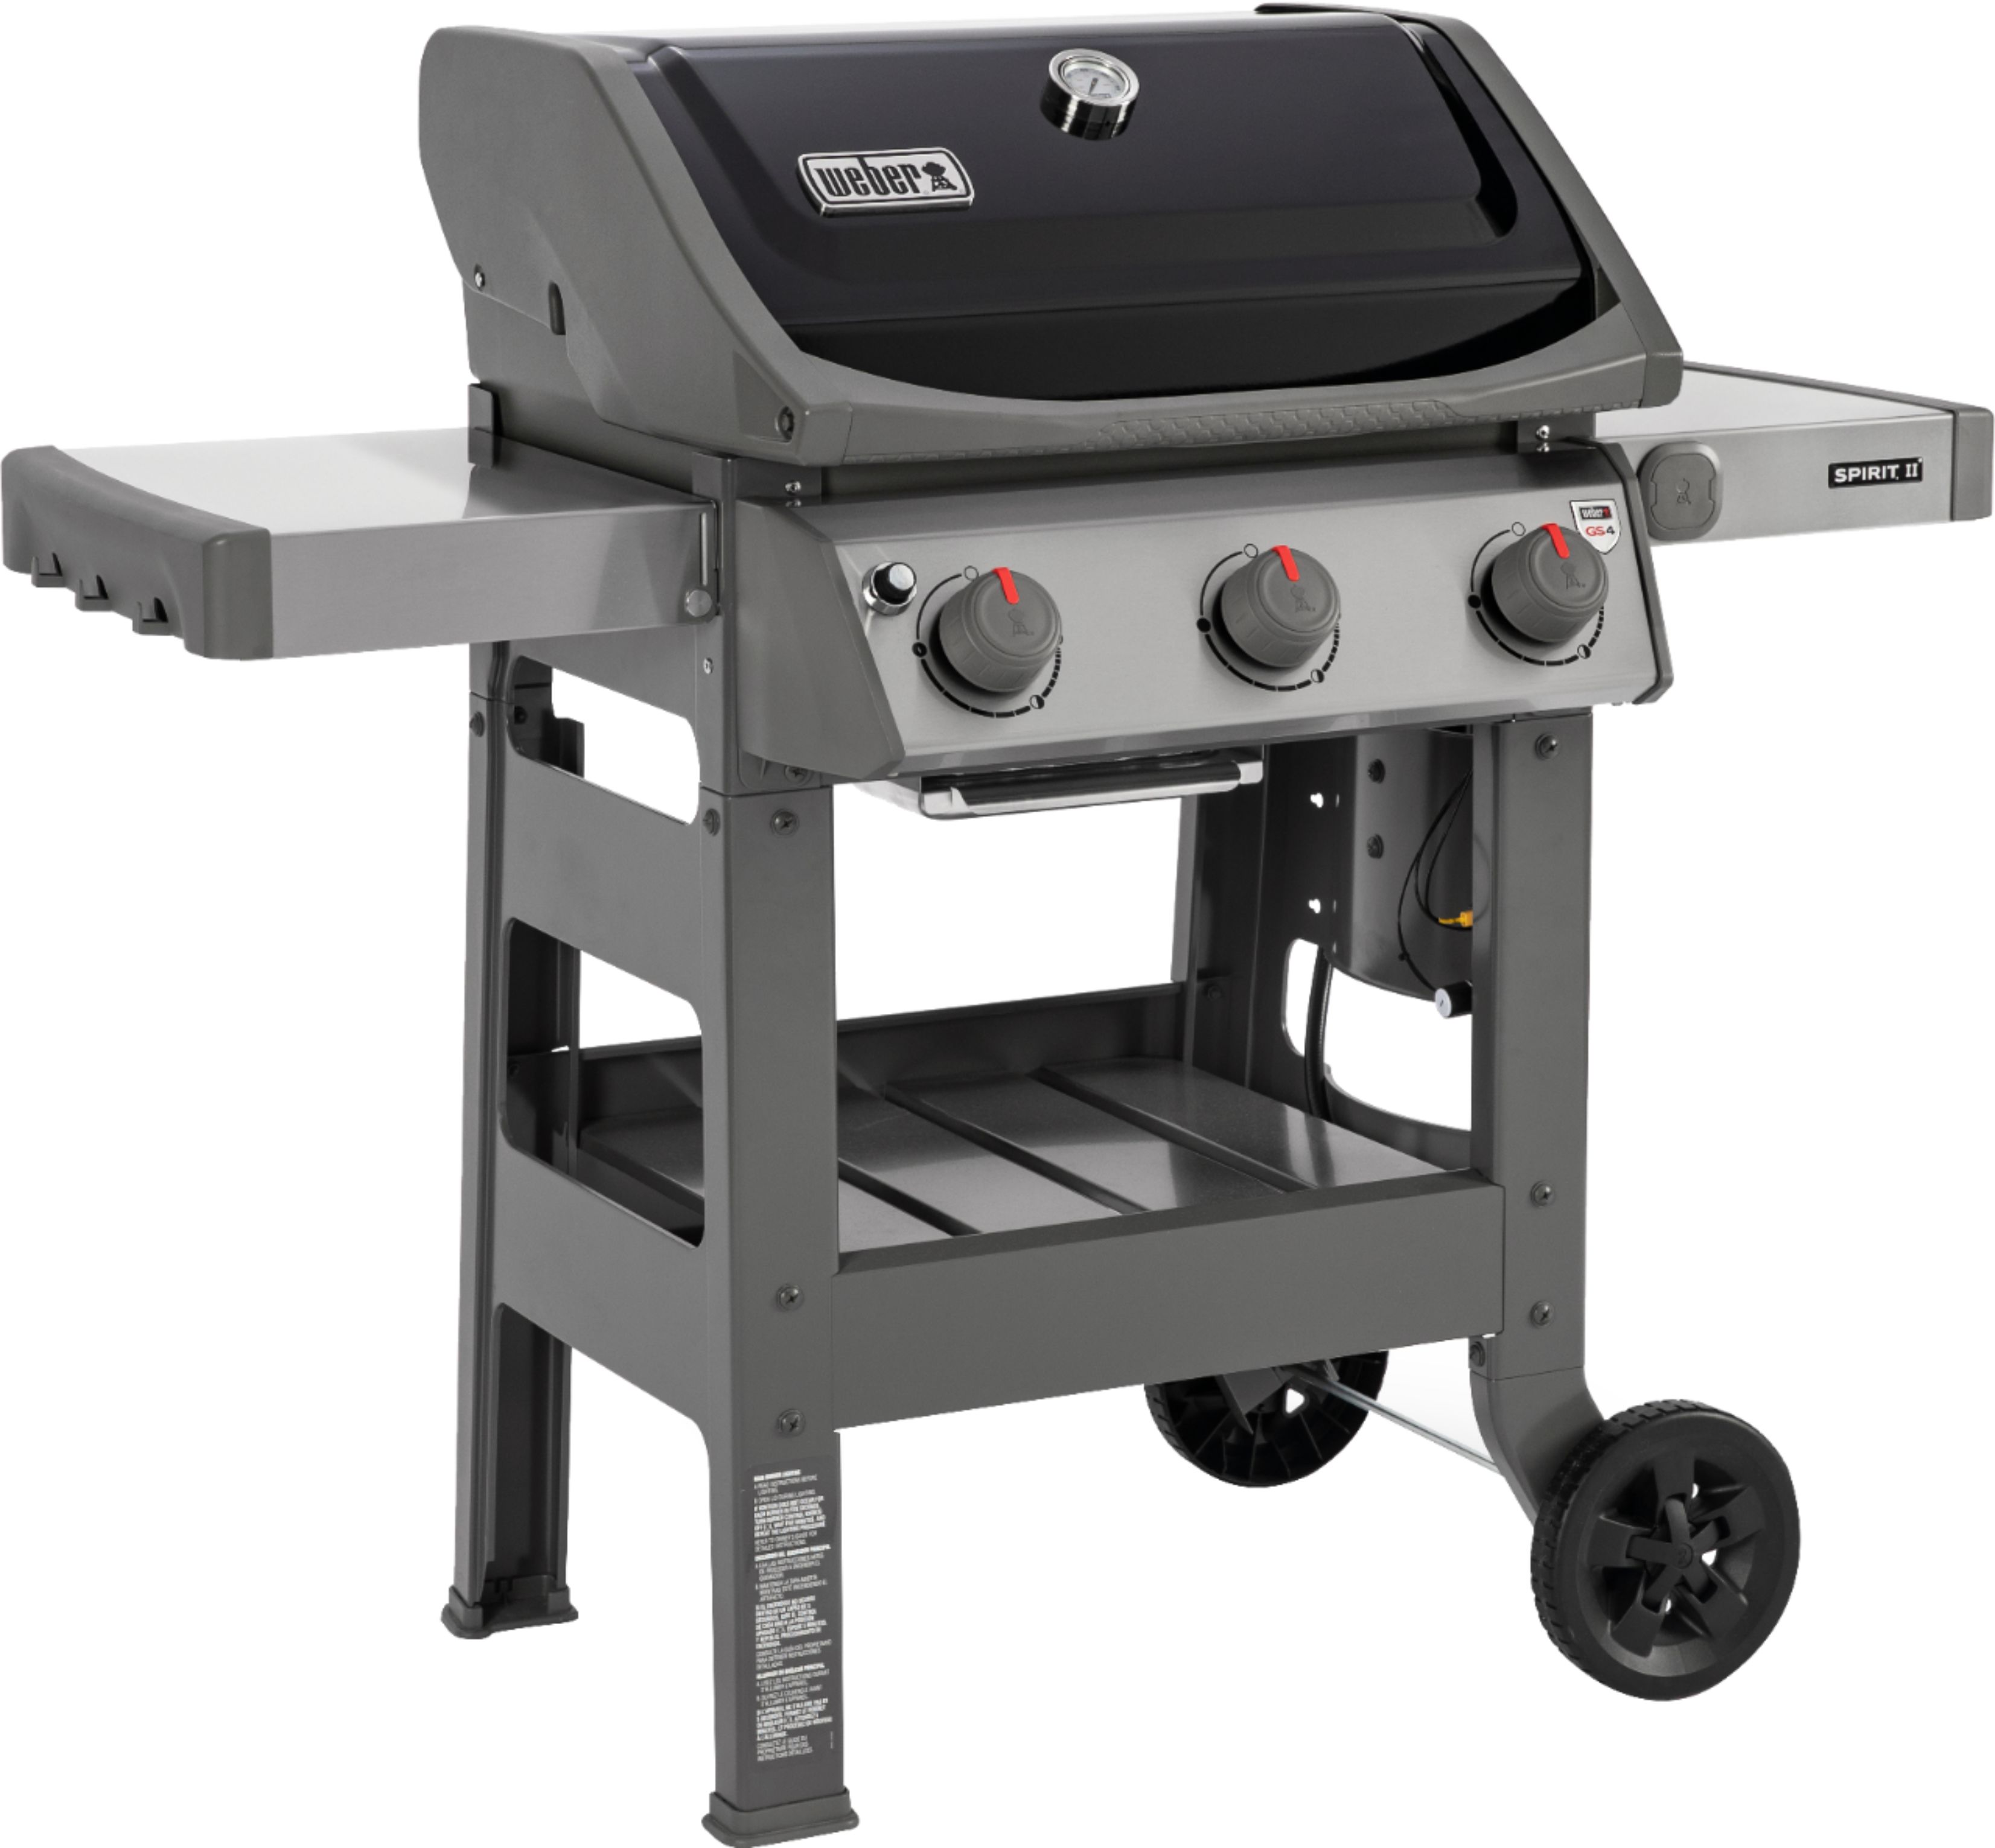 weber-spirit-ii-e-310-3-burner-propane-gas-grill-black-45010001-best-buy